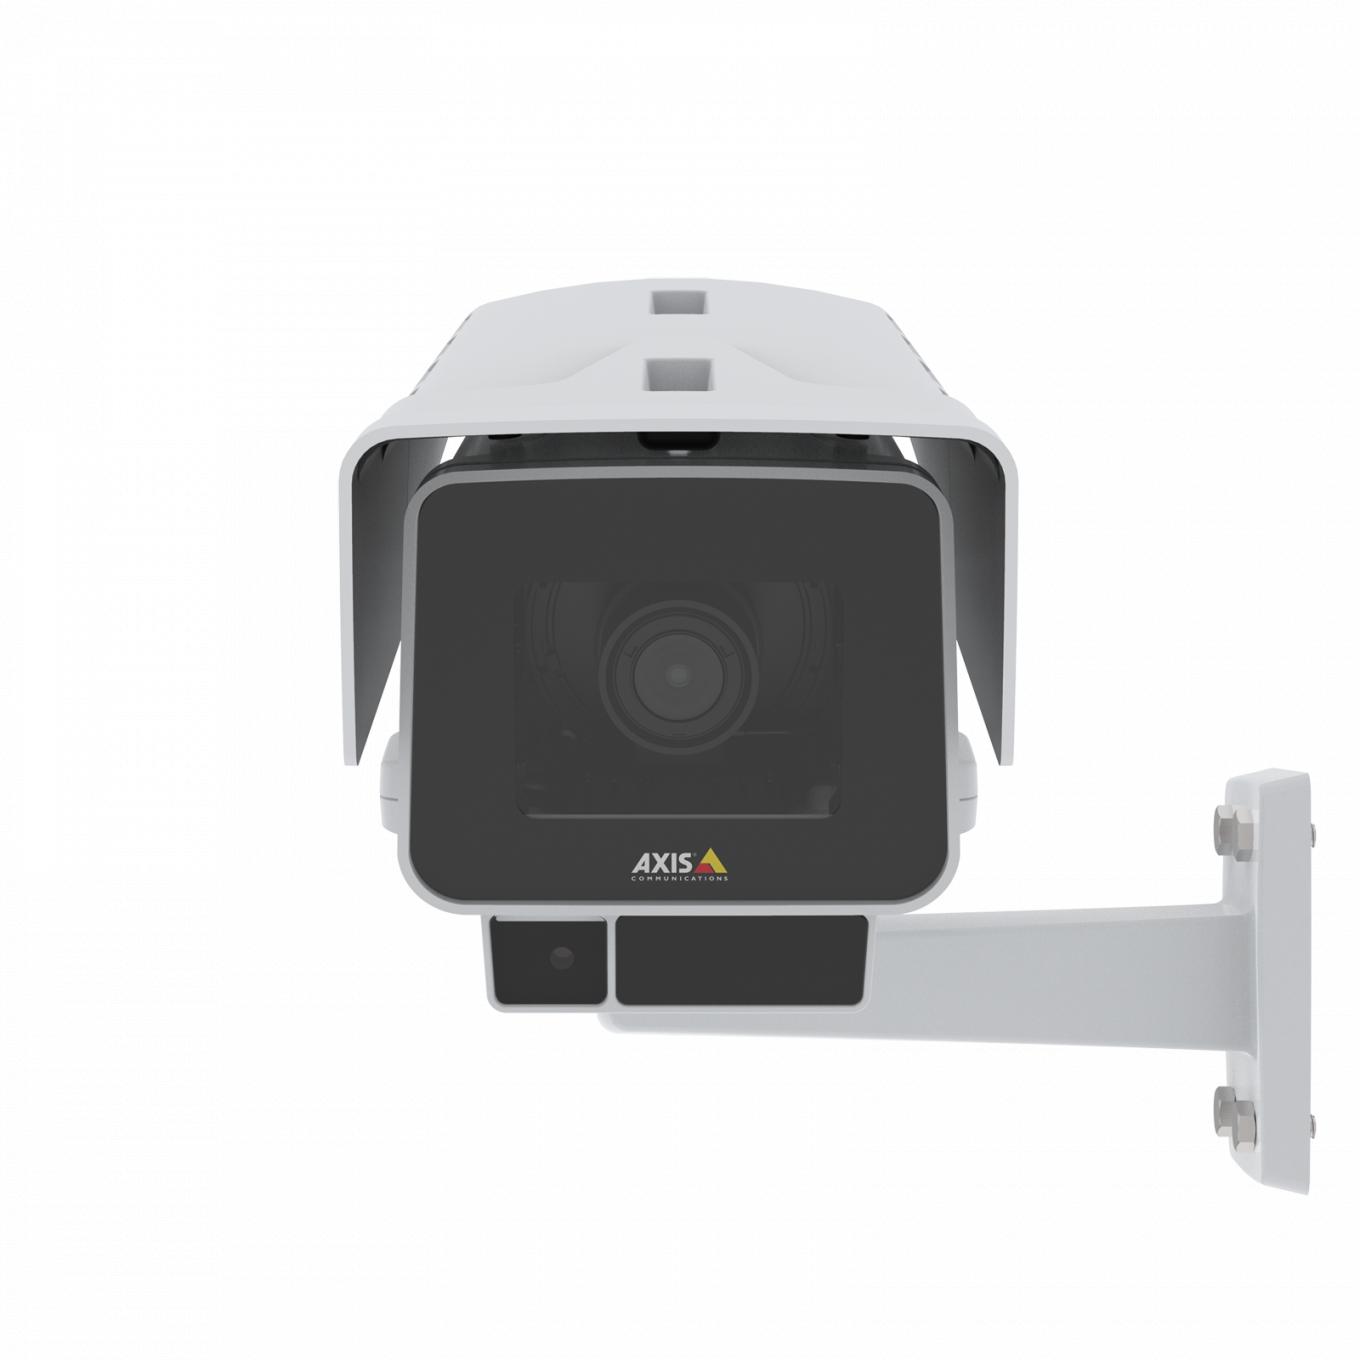 A AXIS P1377-LE IP Camera possui OptimizedIR e Forensic WDR. O produto é visto pela frente.